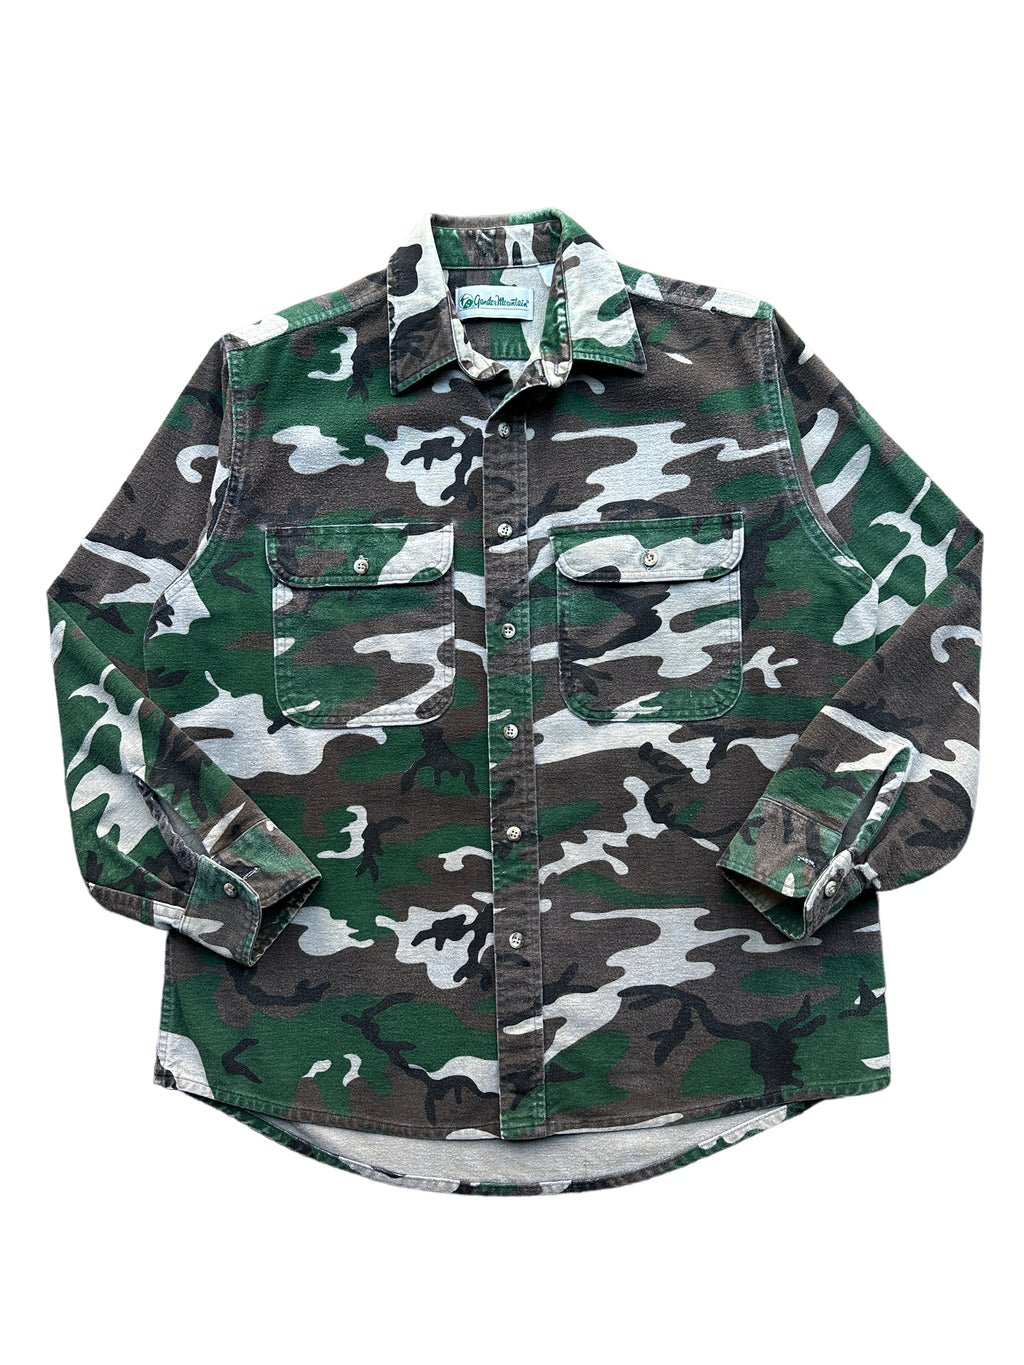 80s Gander mountain camo chamois shirt XL